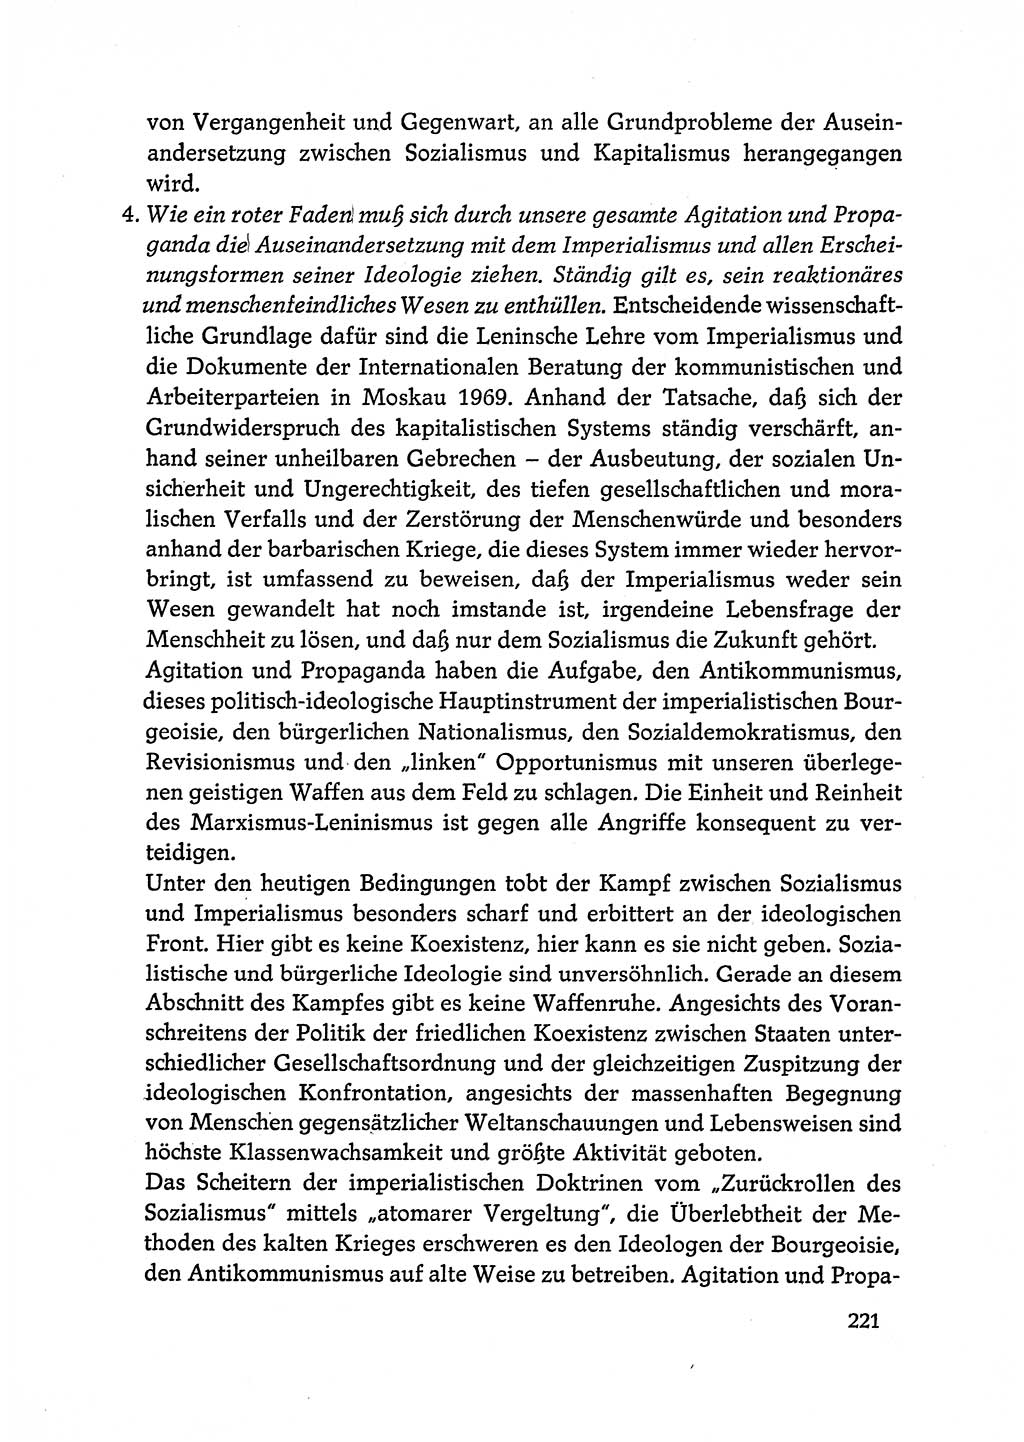 Dokumente der Sozialistischen Einheitspartei Deutschlands (SED) [Deutsche Demokratische Republik (DDR)] 1972-1973, Seite 221 (Dok. SED DDR 1972-1973, S. 221)